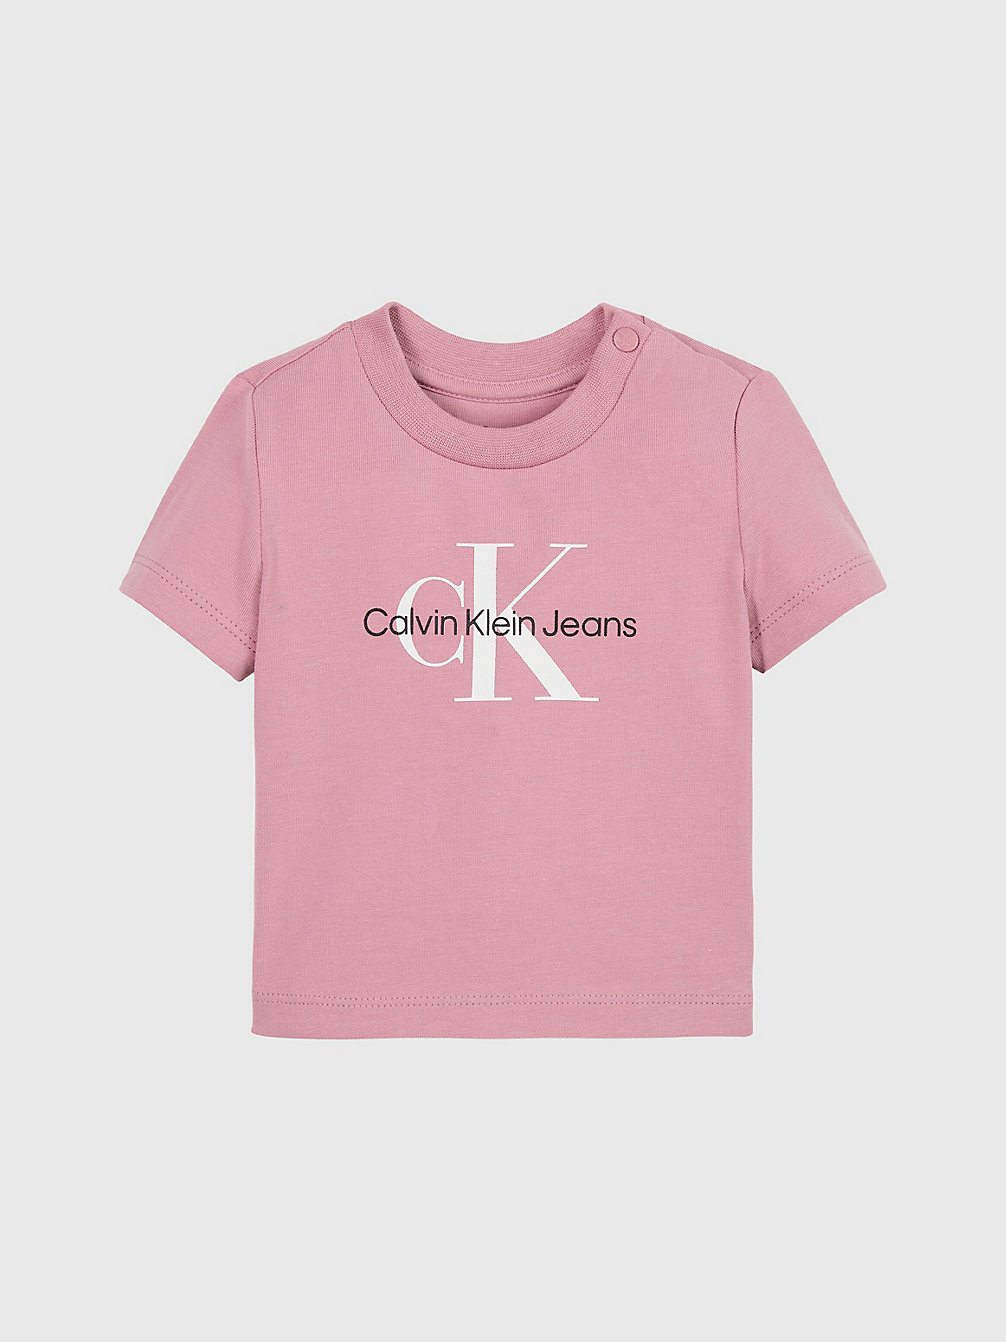 FOXGLOVE > Baby-T-Shirt Mit Logo > undefined newborn - Calvin Klein